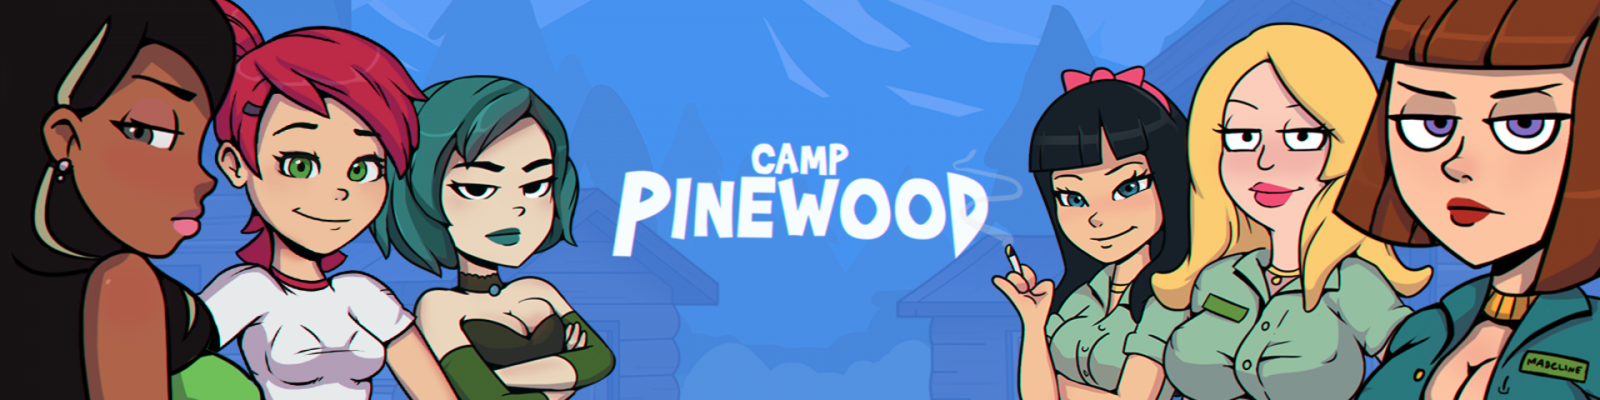 Camp Pinewood v1.8 VaultMan.